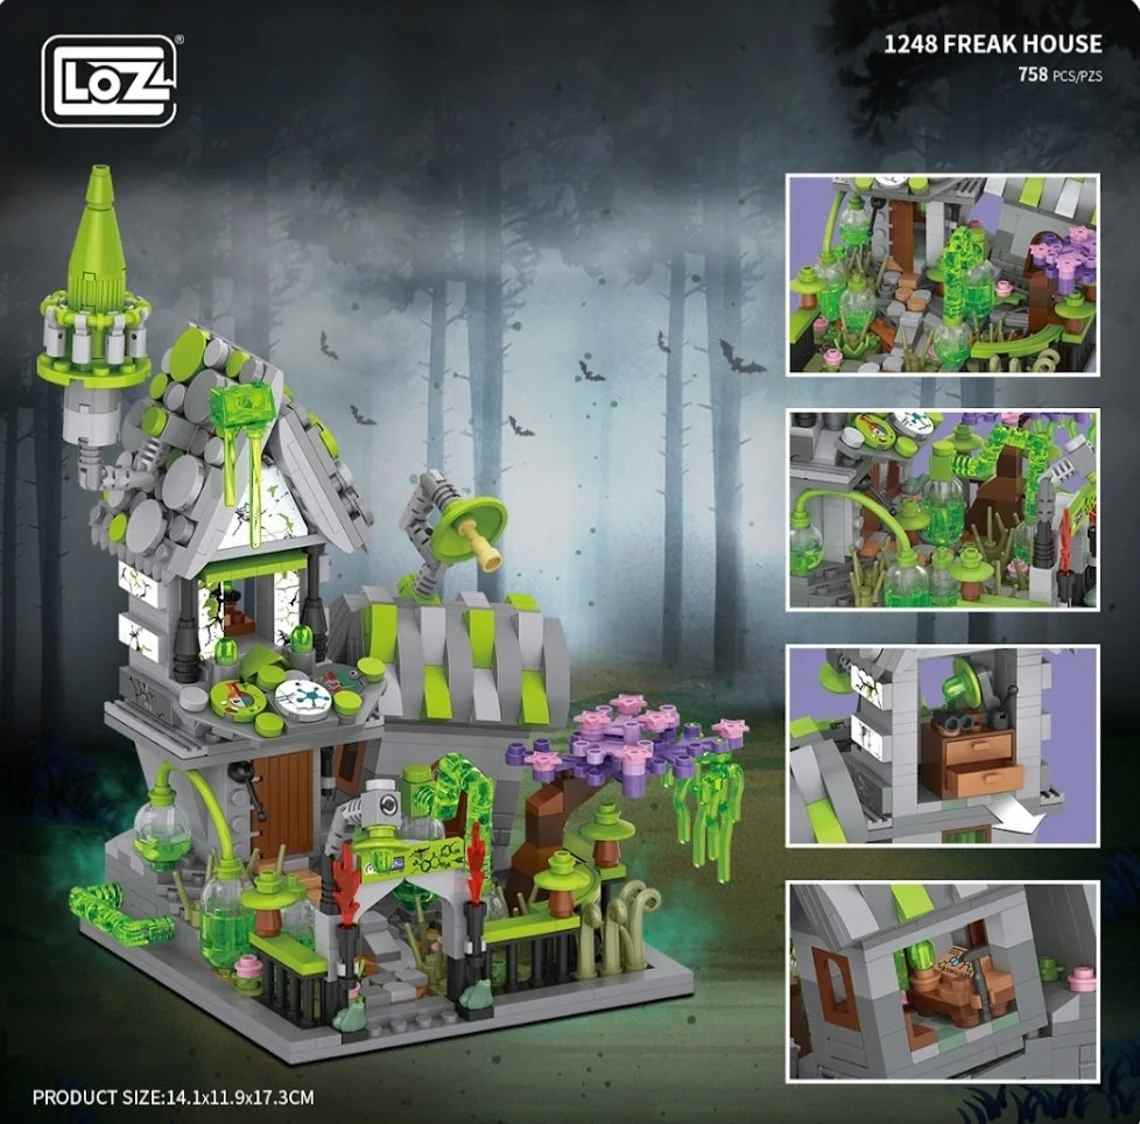 LOZ Mini Building Blocks Freak House (1248) Mini Block Toys Christmas Gifts